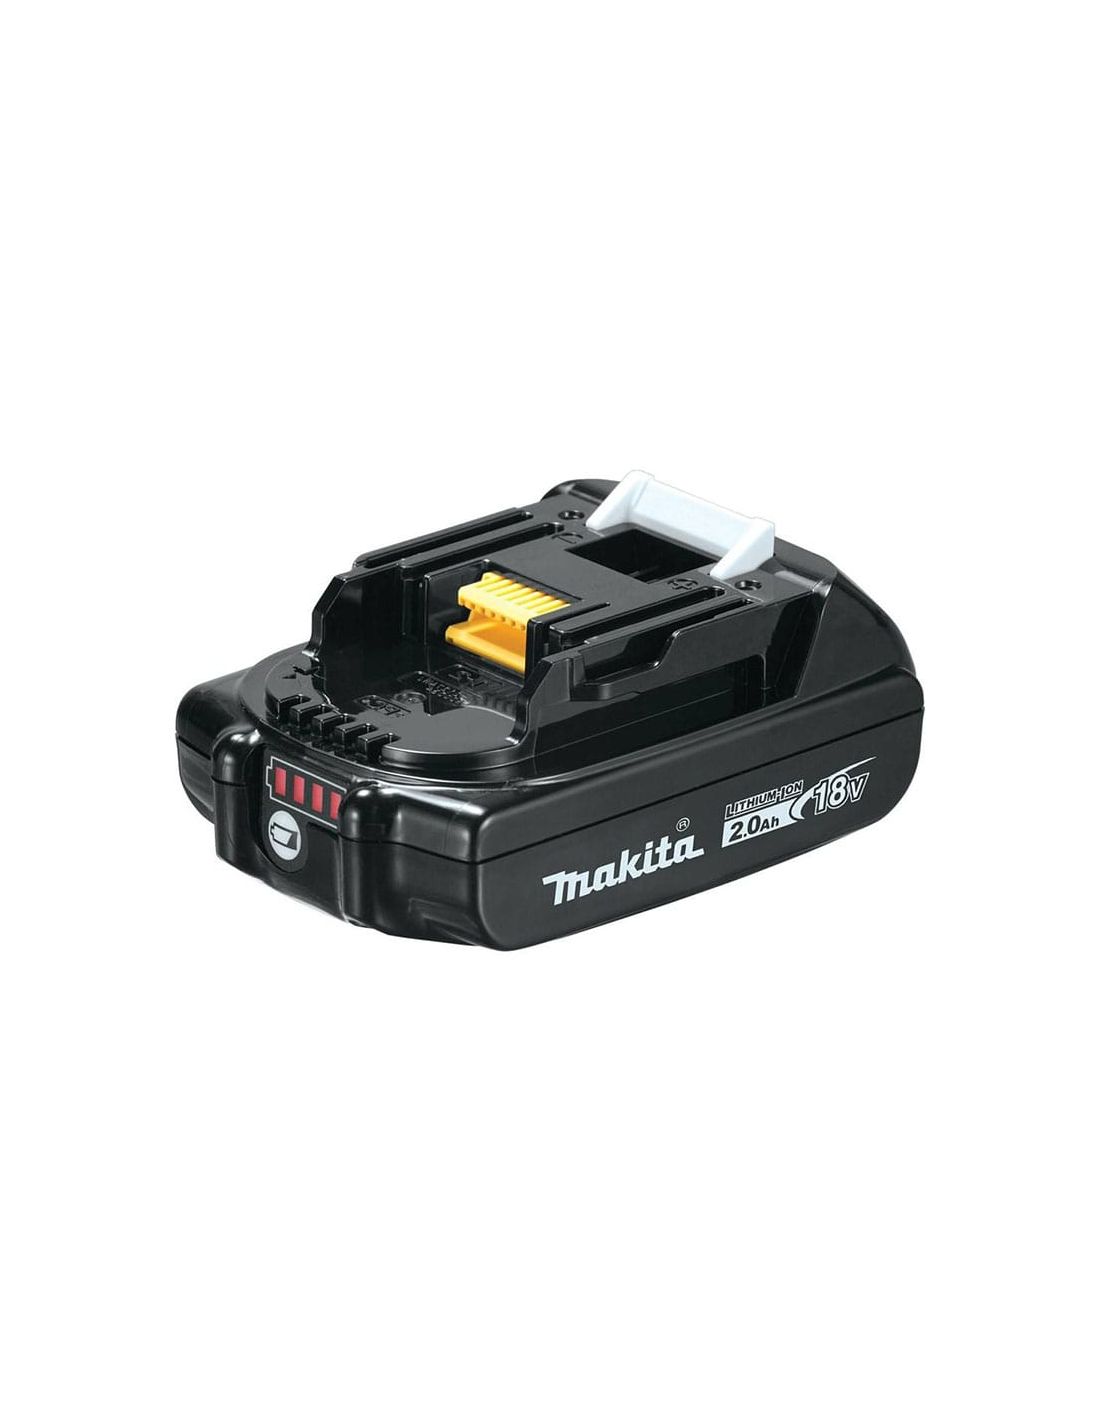 Batterie outillage portatif compatible avec, entre autres, Makita